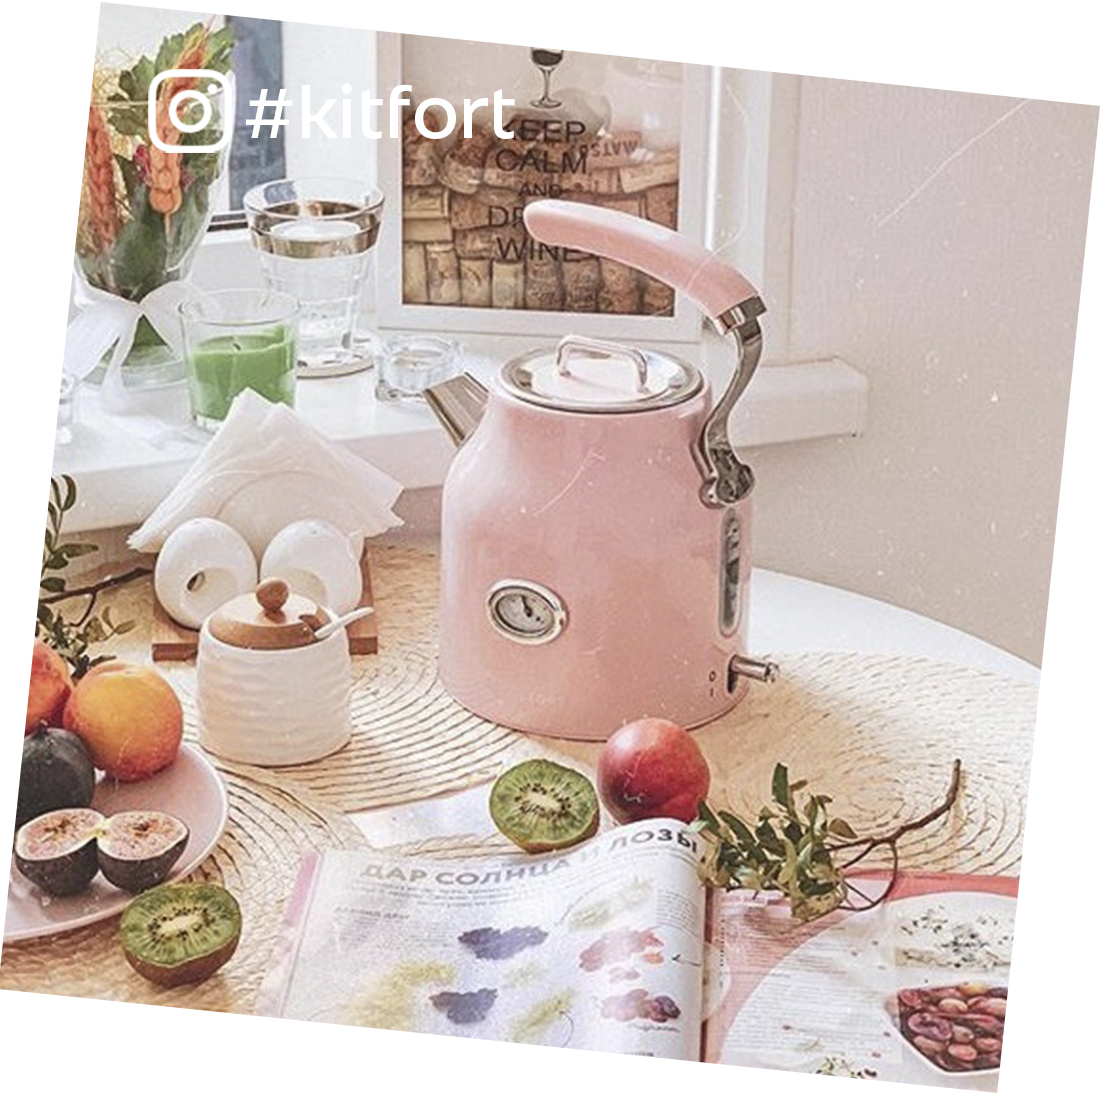 Чайник Kitfort KT-663-3, розовый